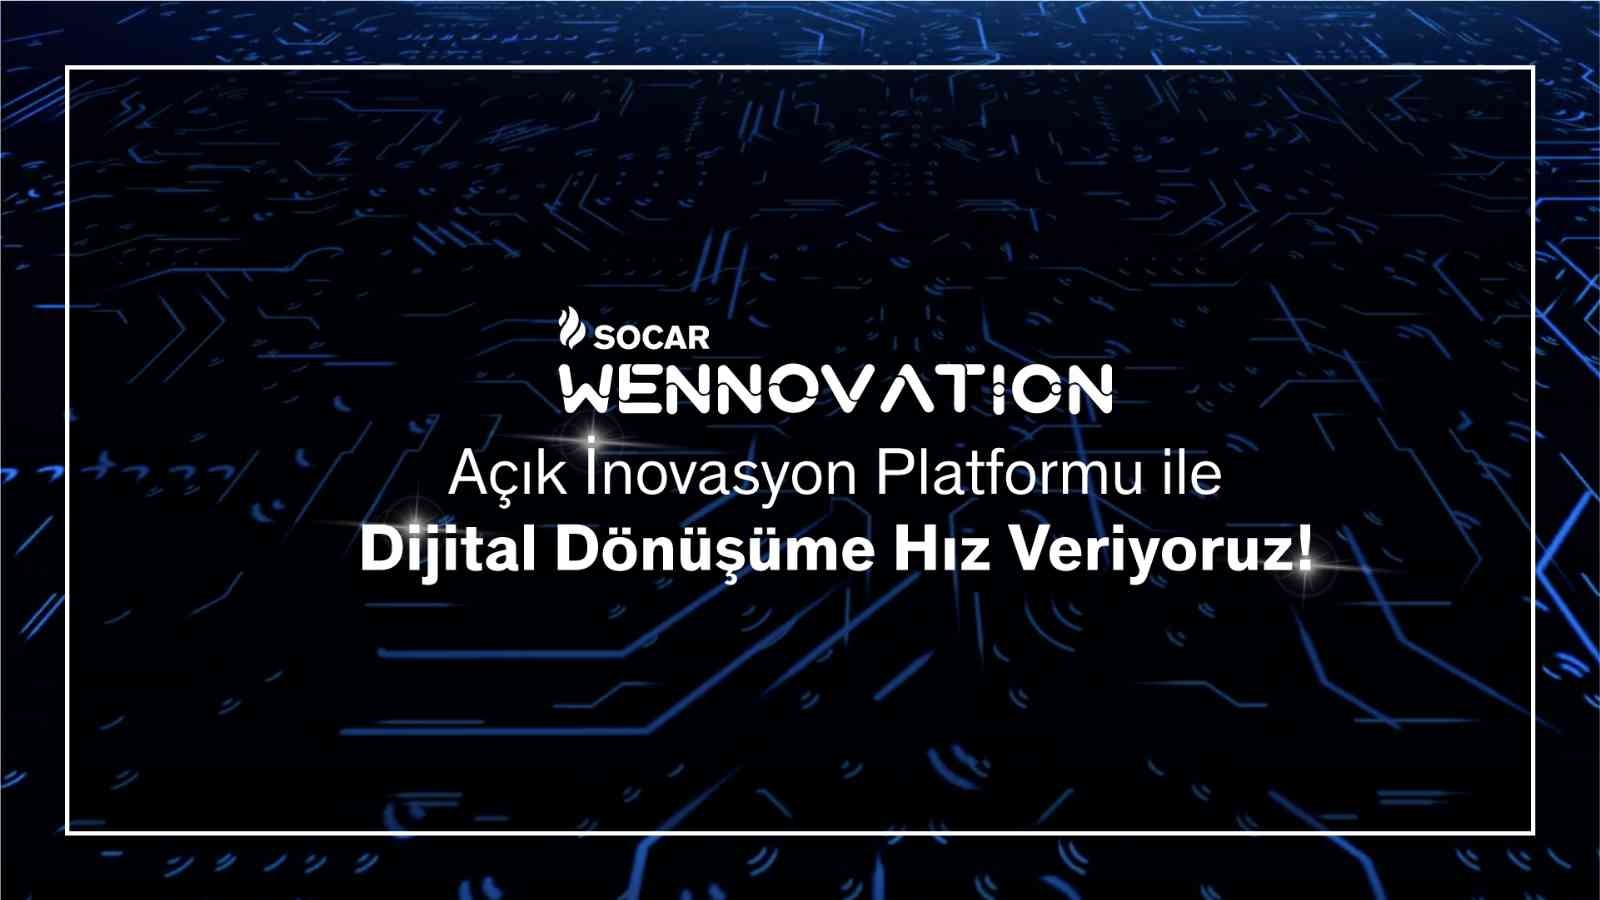 SOCAR Türkiye’den Açık İnovasyon Platformu: SOCAR Wennovation